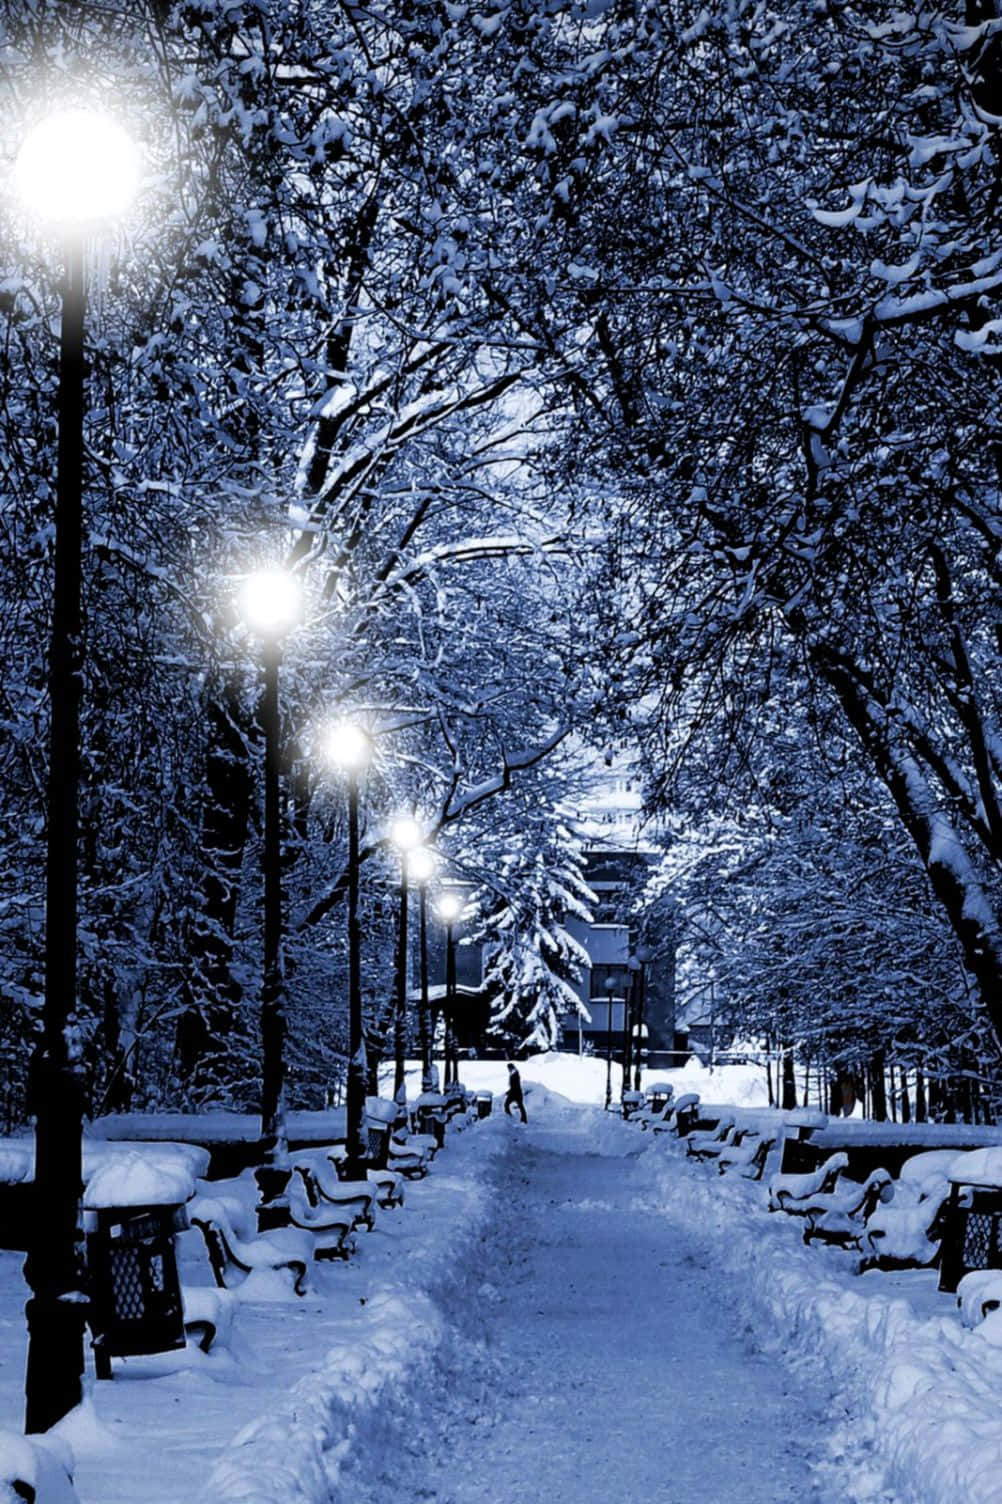 "whimsical Winter Wonderland"